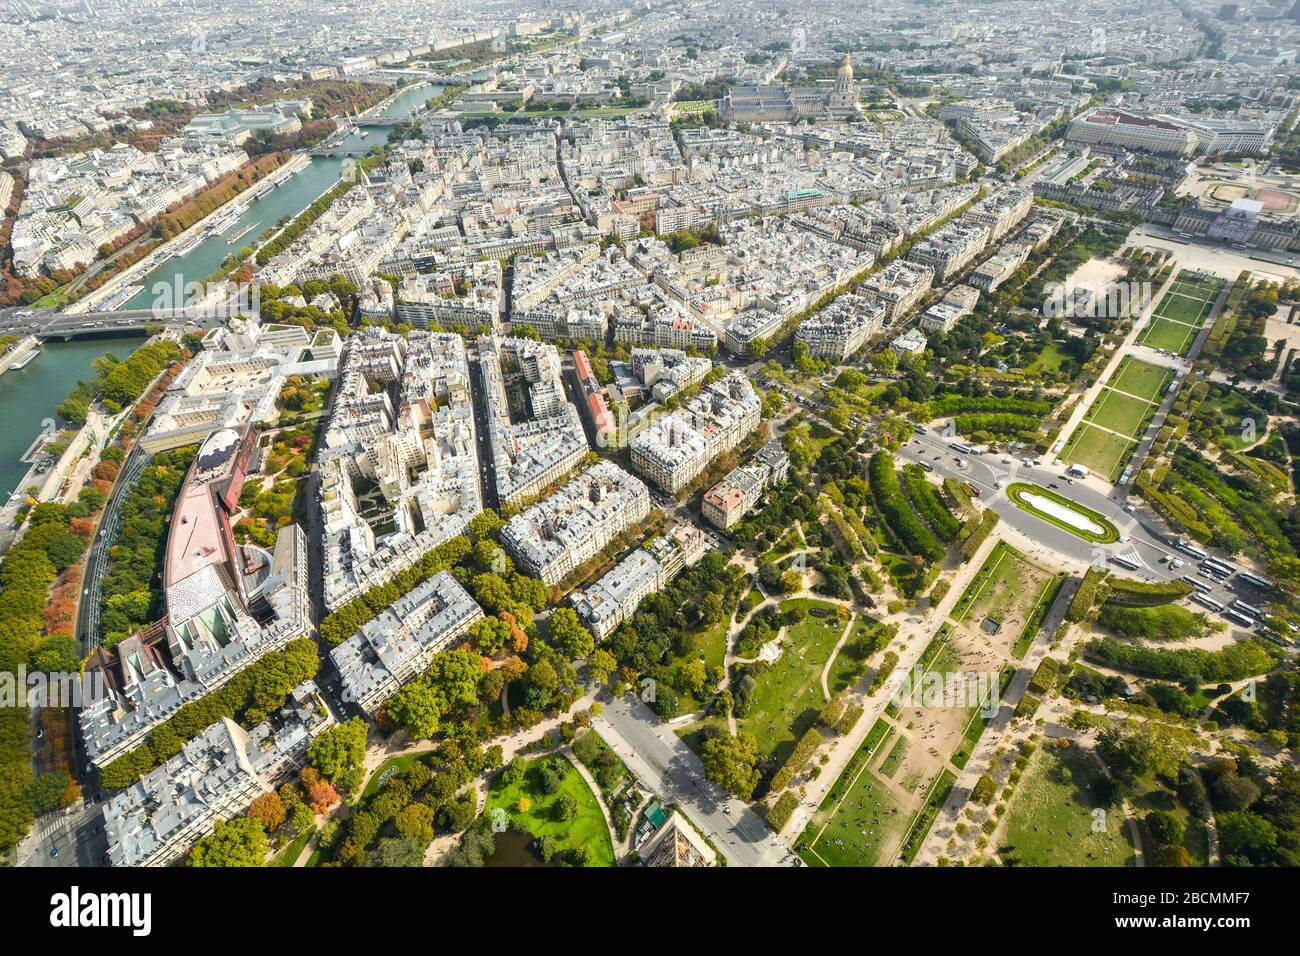 Vista superior desde la plataforma de la Torre Eiffel de la ciudad de París Francia con el río Sena, el parque Champ de Mars y la Ecole Militaire a la vista. Foto de stock